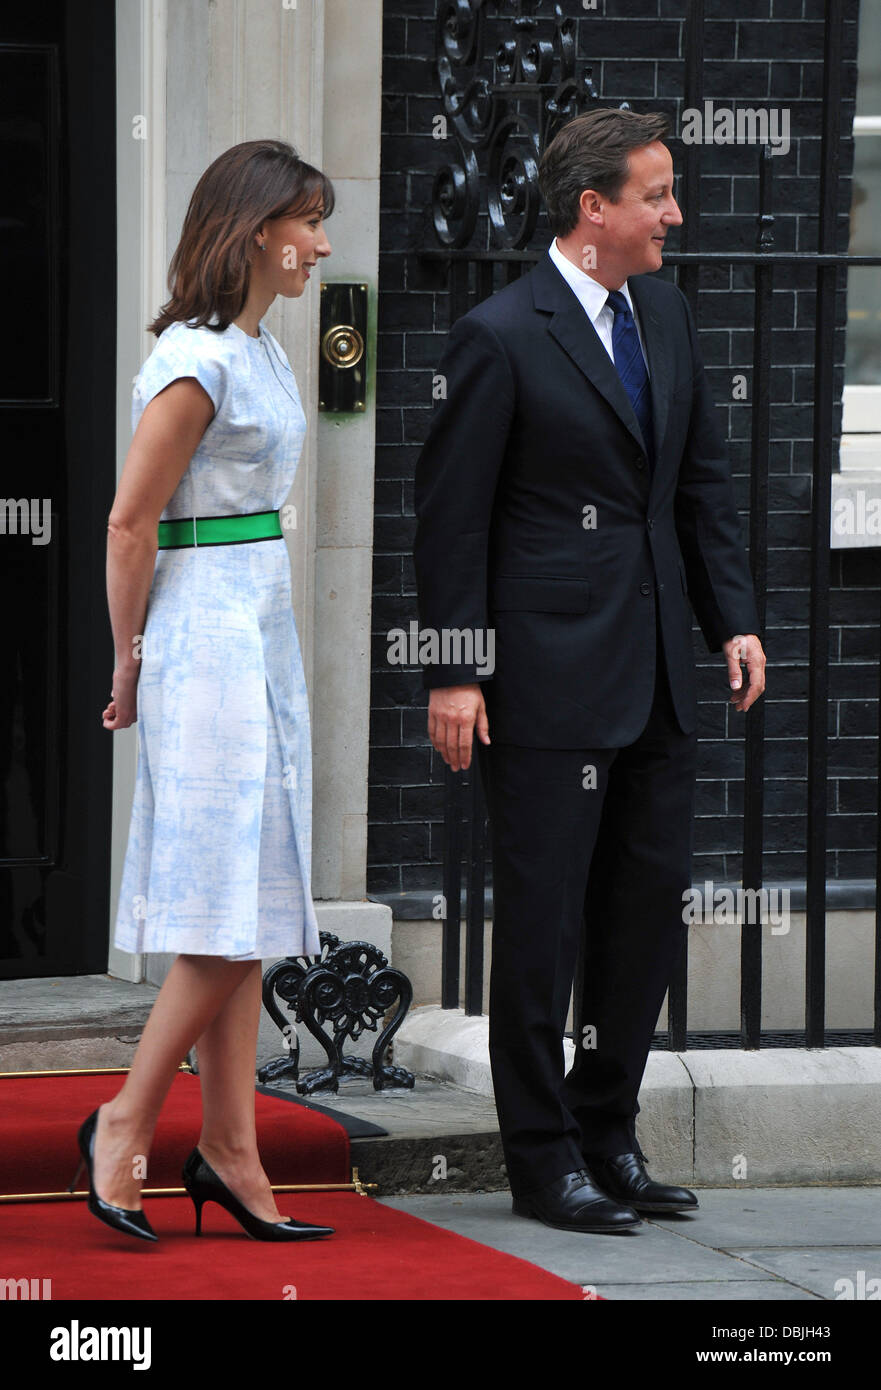 David Cameron, Samantha Cameron, el Duque de Edimburgo, el cumpleaños número 90 de Downing Street - recepción. Londres, Inglaterra - 21.06.11 Foto de stock